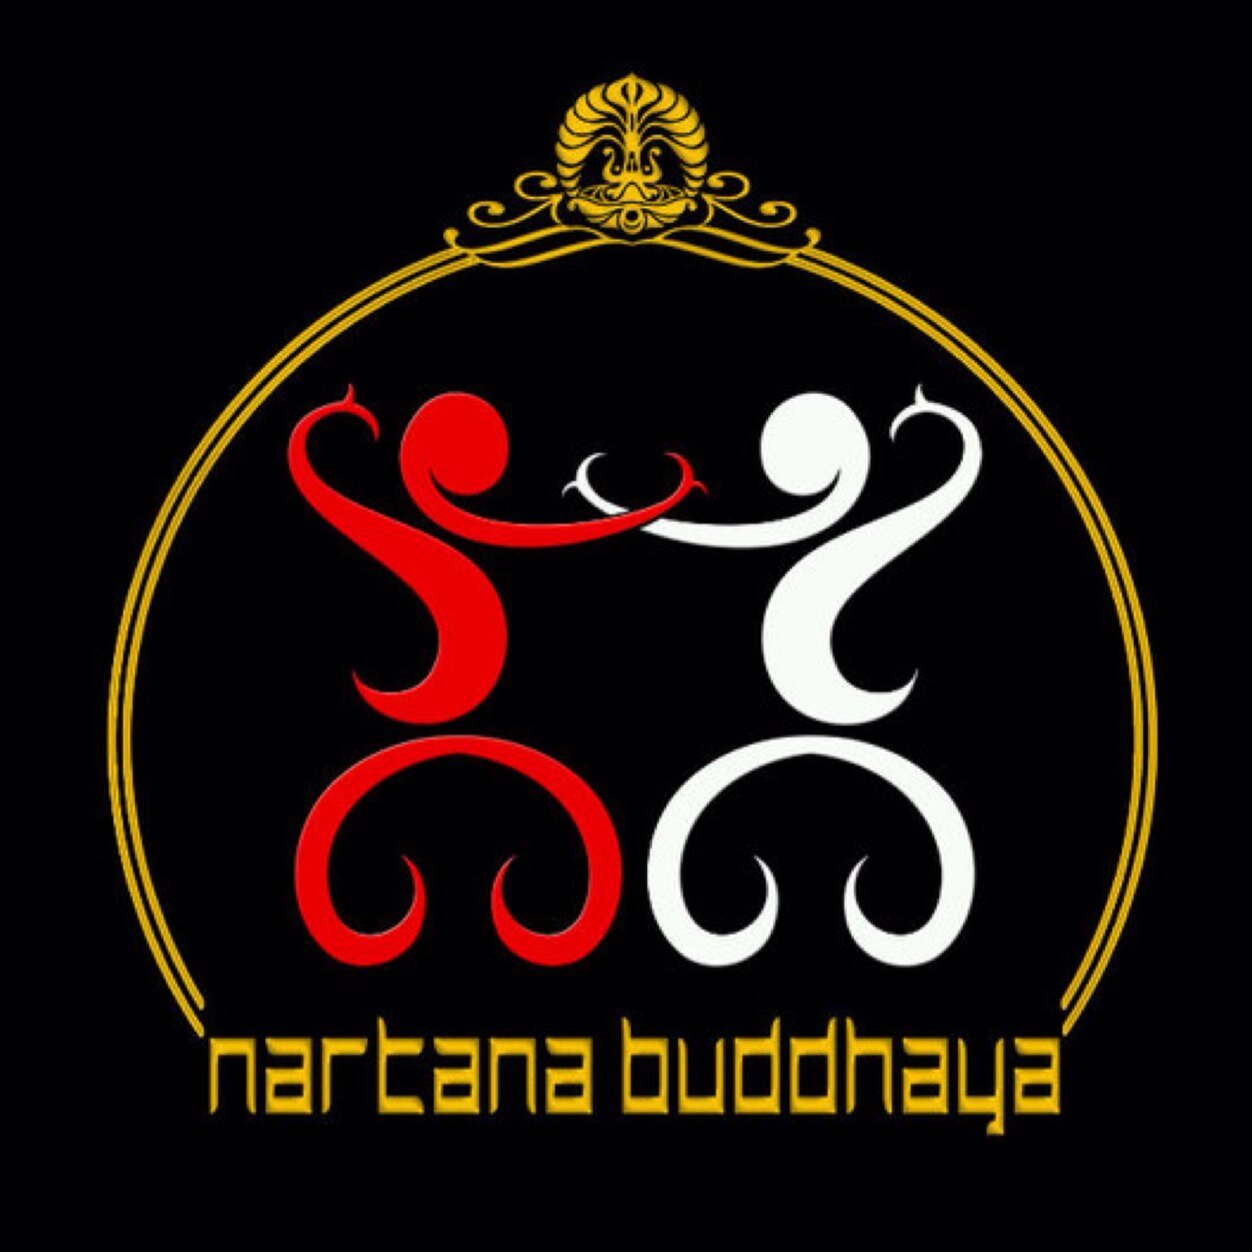 BSO Tari Fakultas Ilmu Pengetahuan Budaya, Universitas Indonesia | Trads&Modern dance for ur event, Contact: 082122707278 (Adinda)